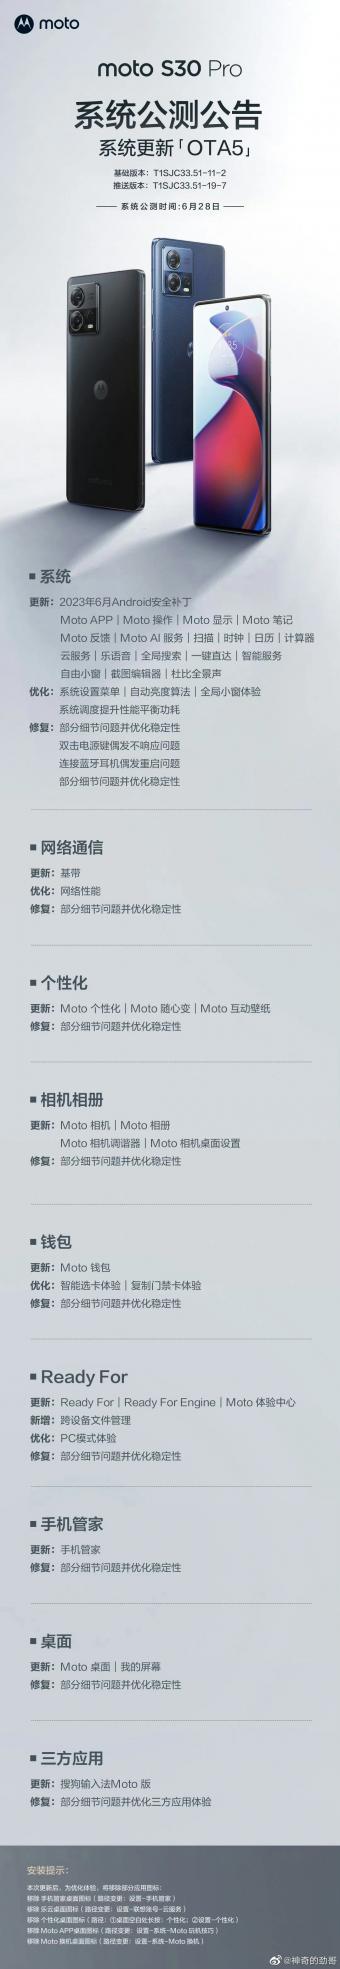 摩托罗拉 S30 Pro 手机获推 MYUI5.0 系统更新